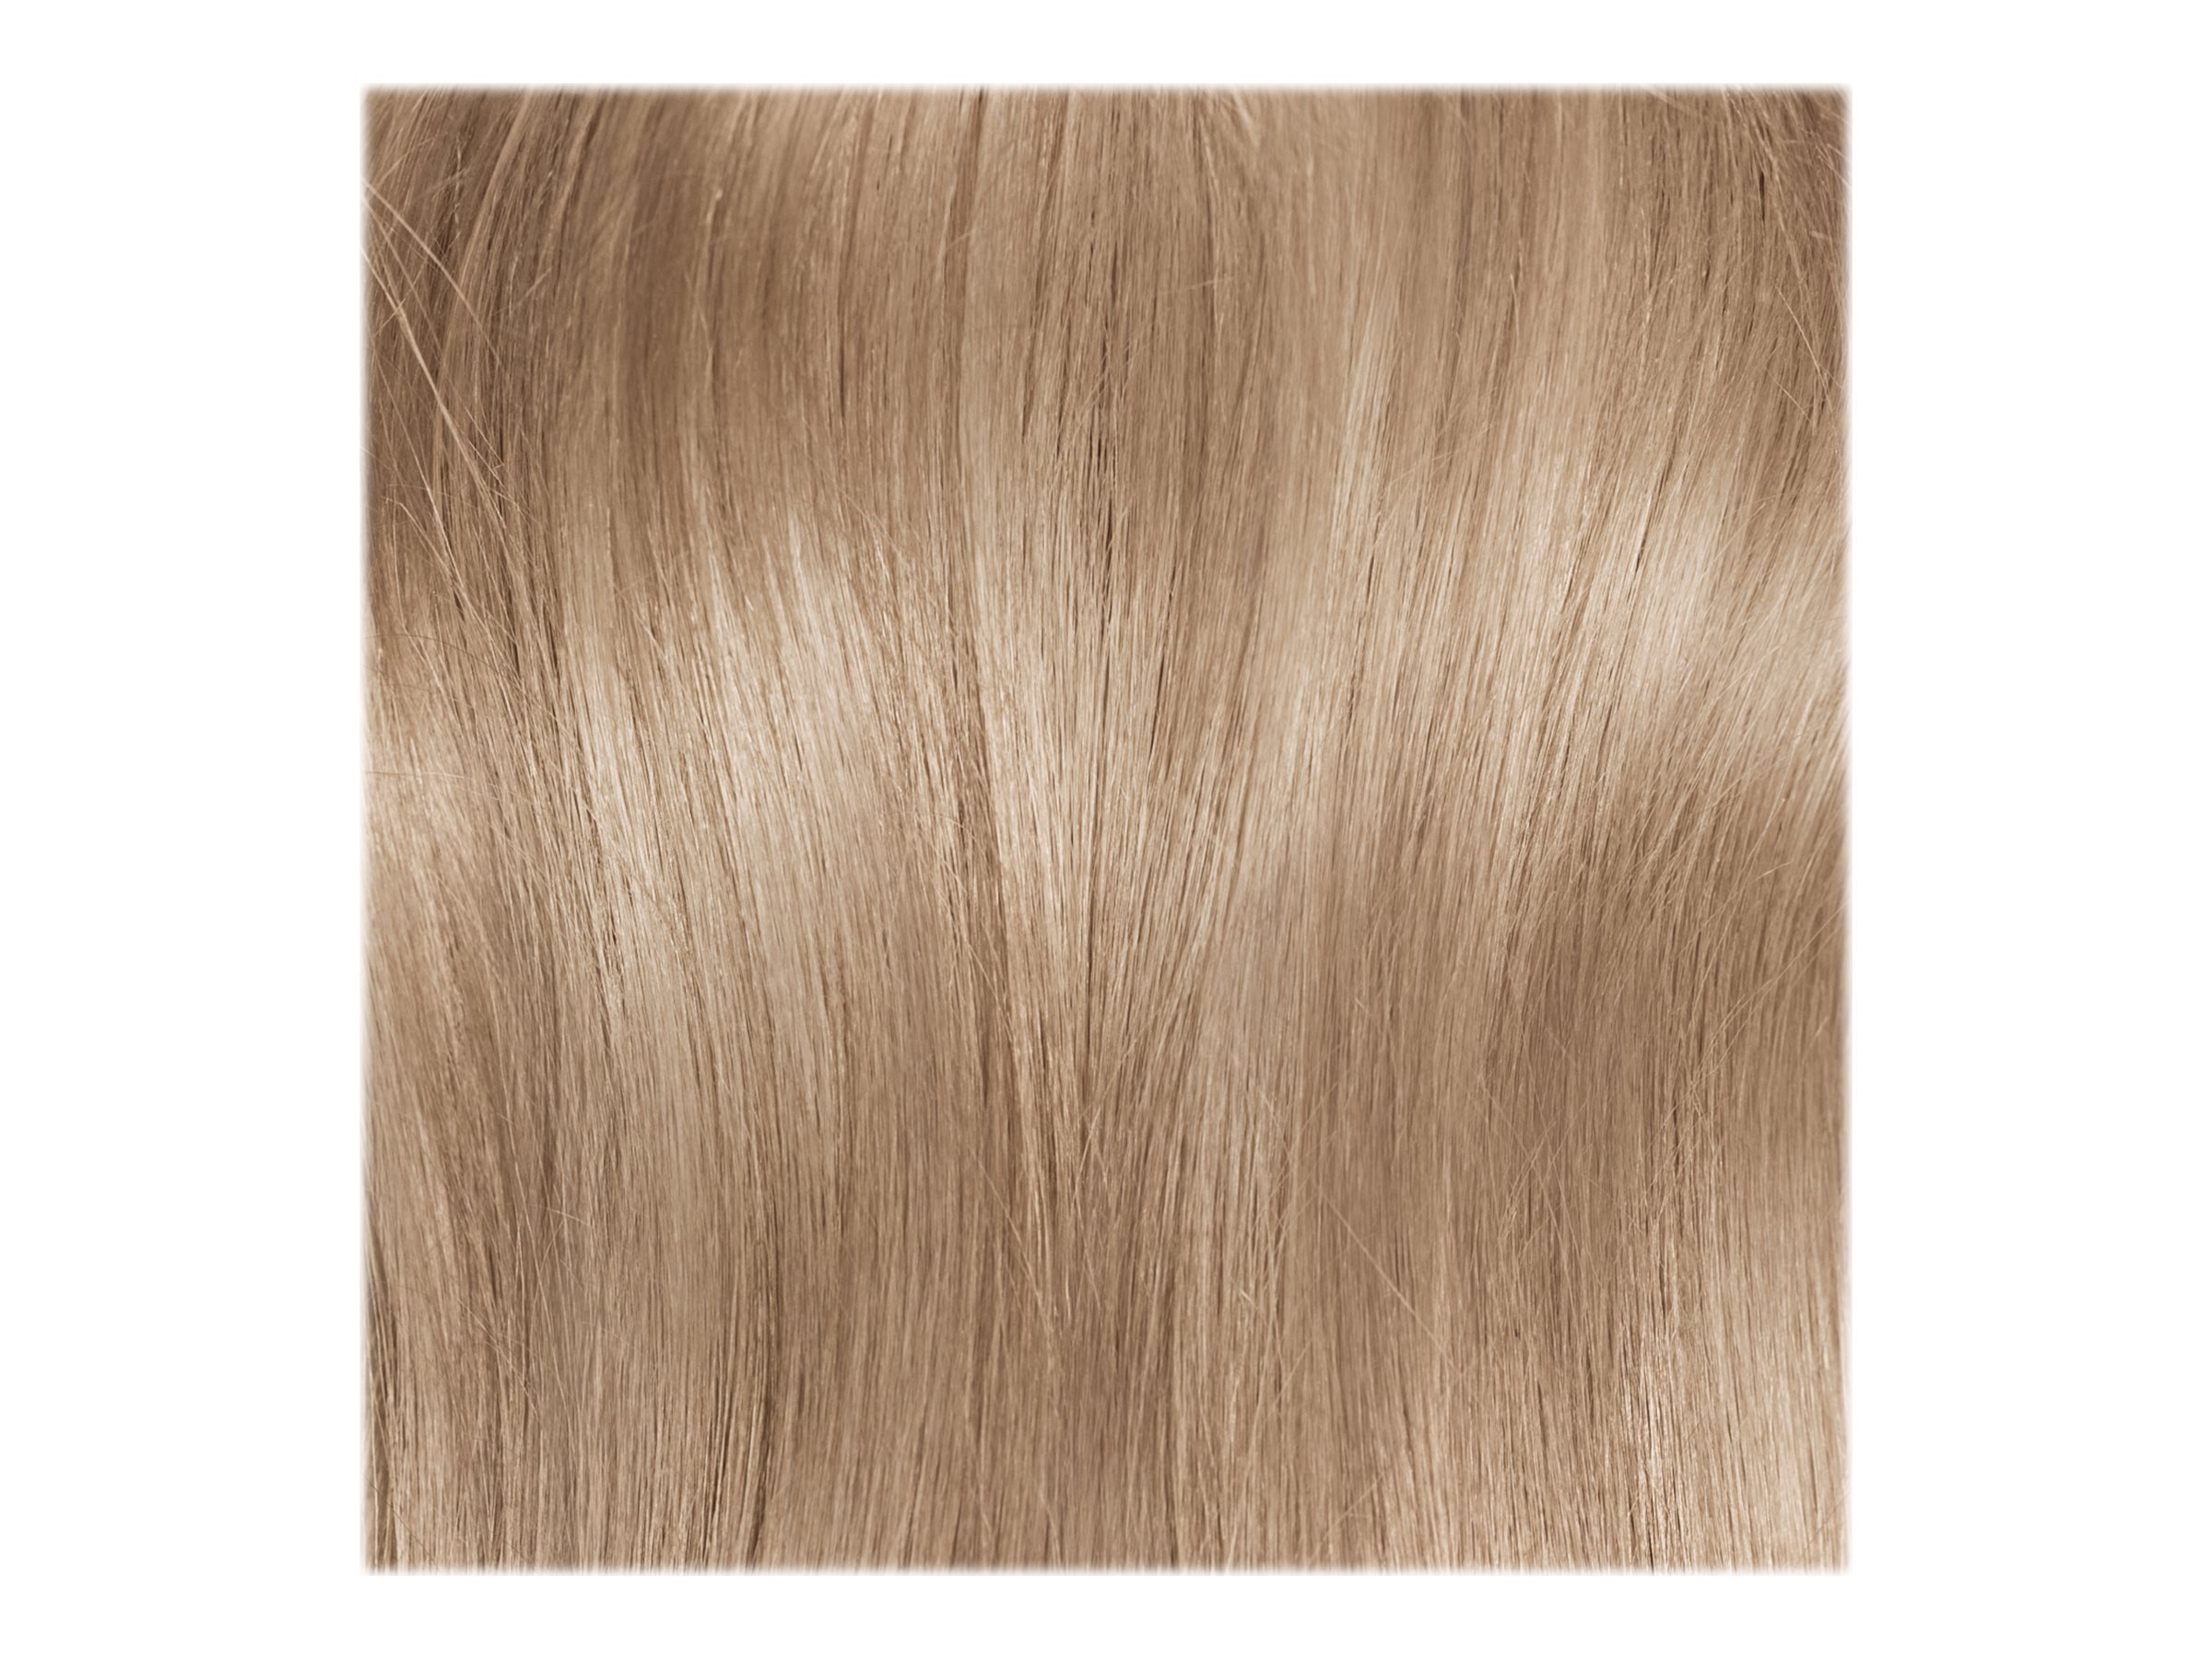 L'Oréal Paris Excellence Crème Permanent Hair Colour - 2 Black Brown -  Direct Chemist Outlet